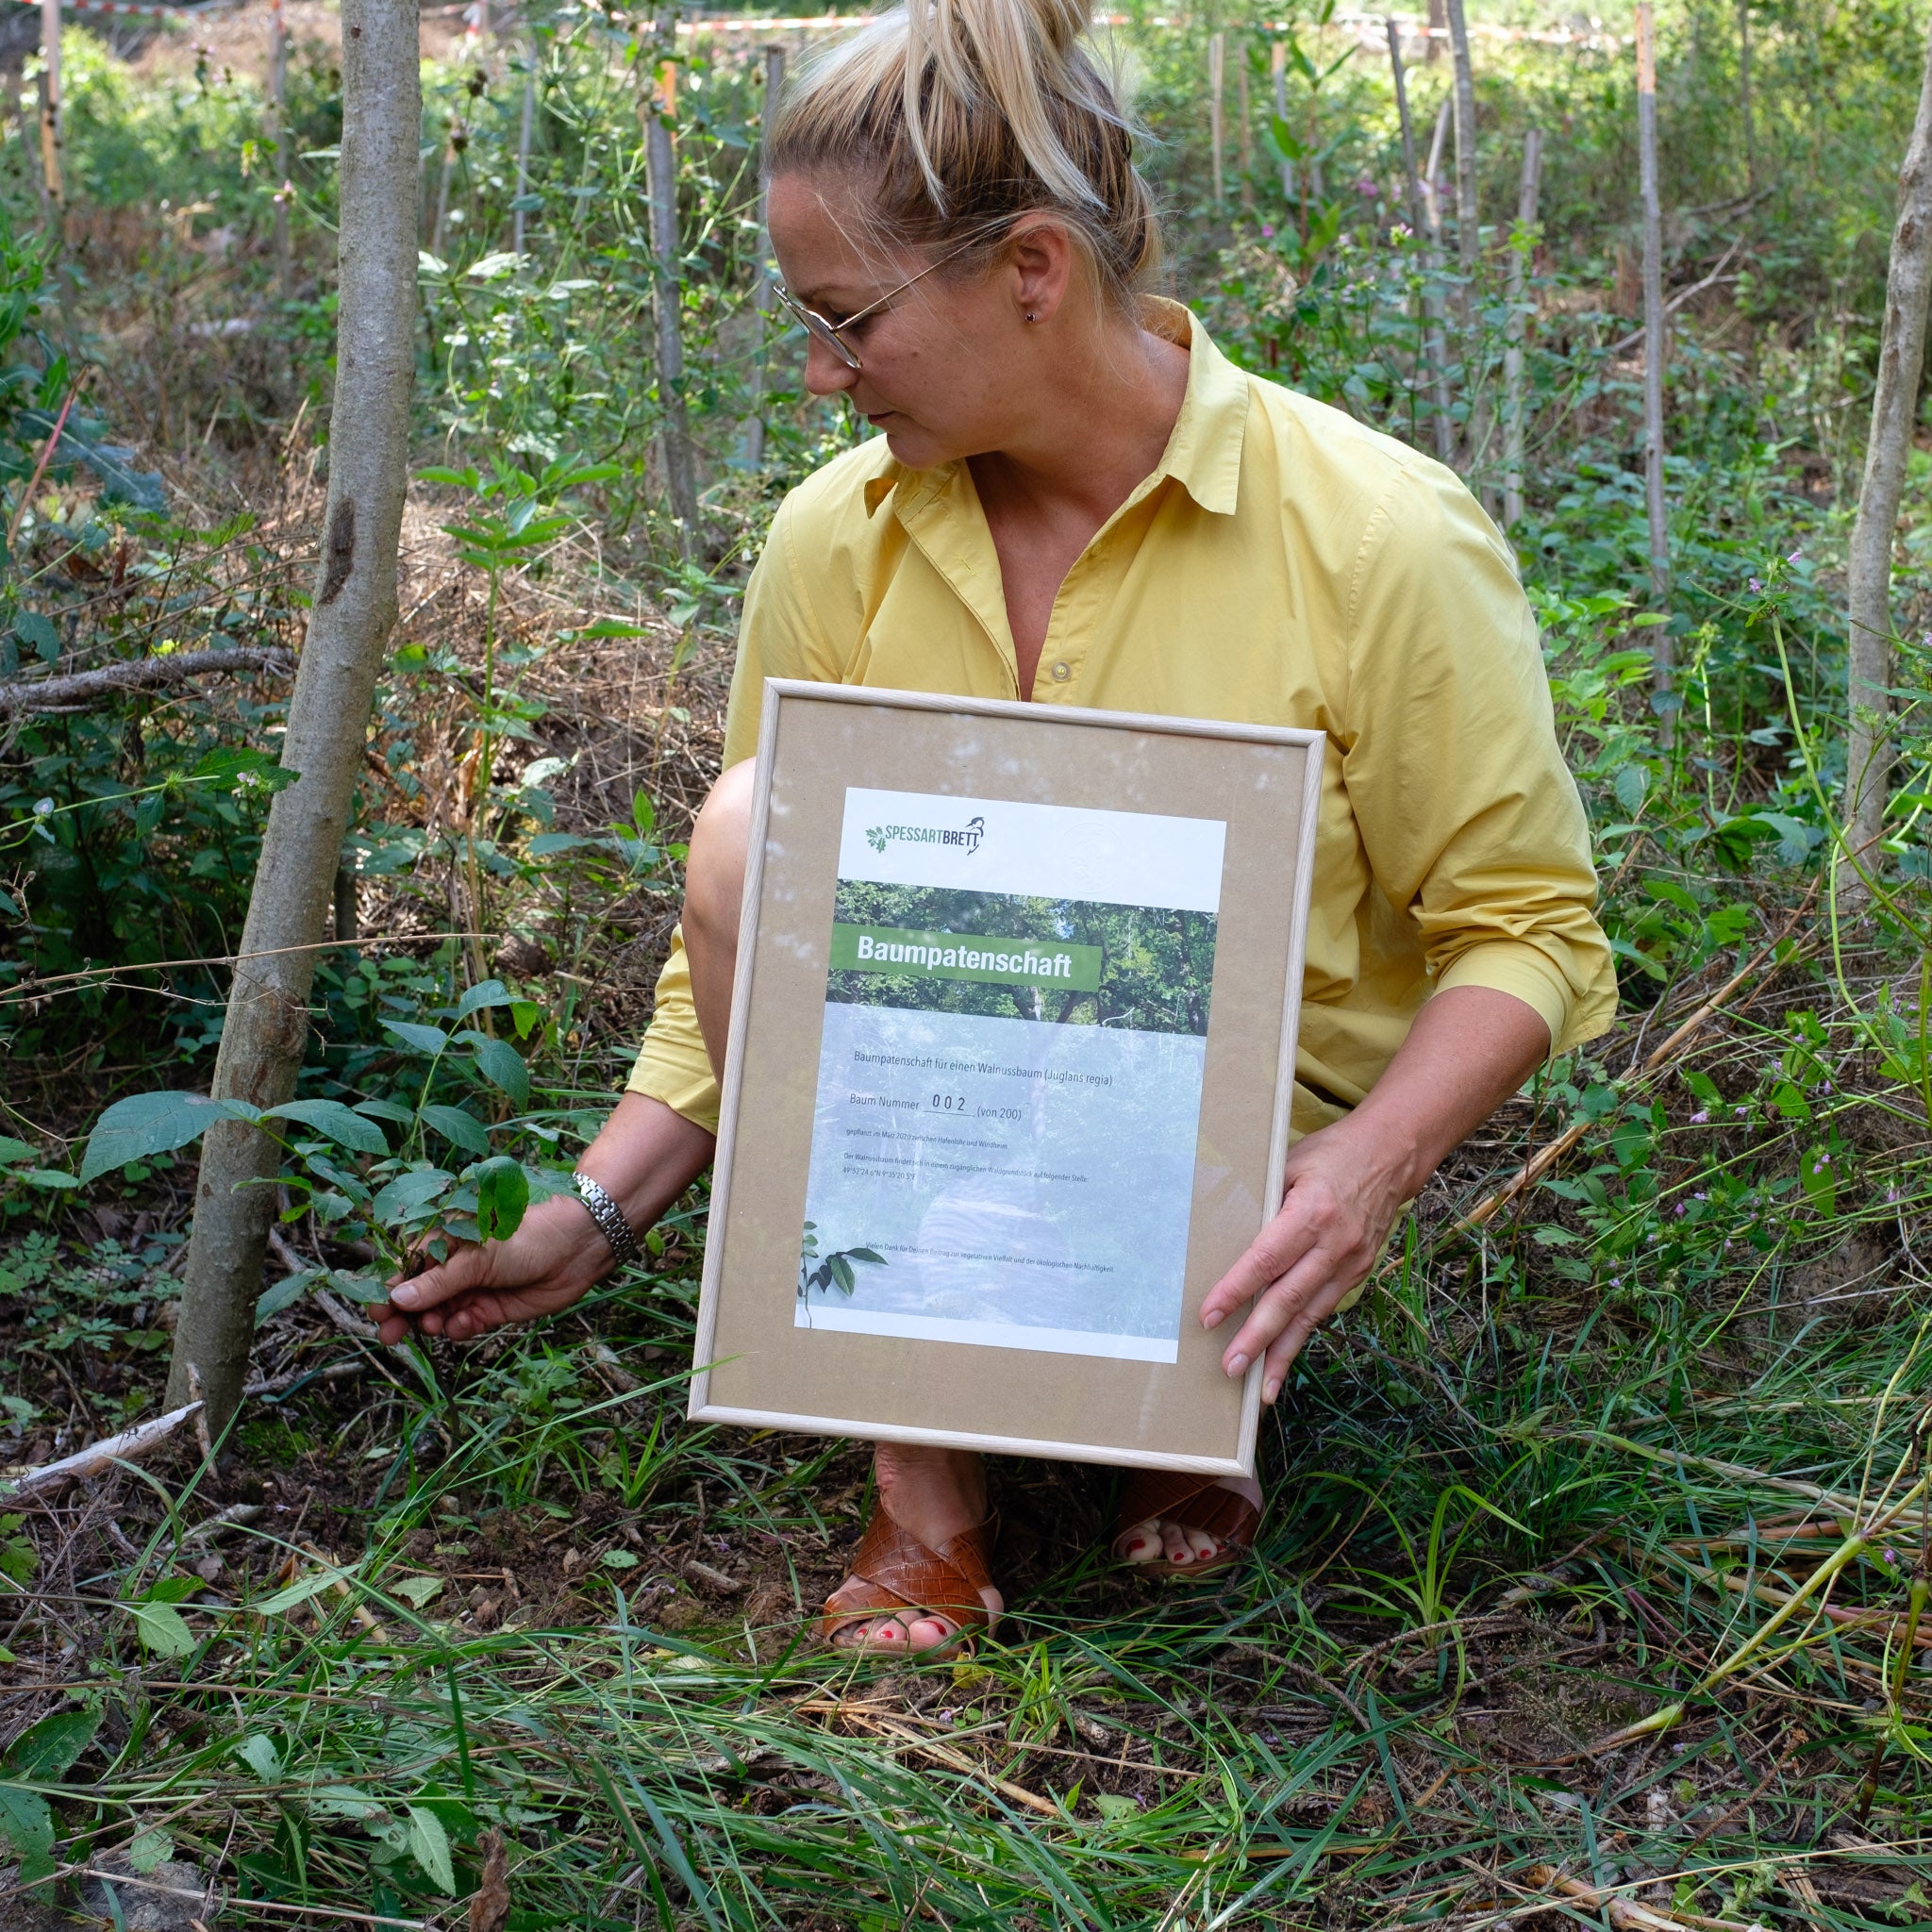 Eine Frau im Wald hält eine Urkunde über eine Baumpatenschaft in der Hand.